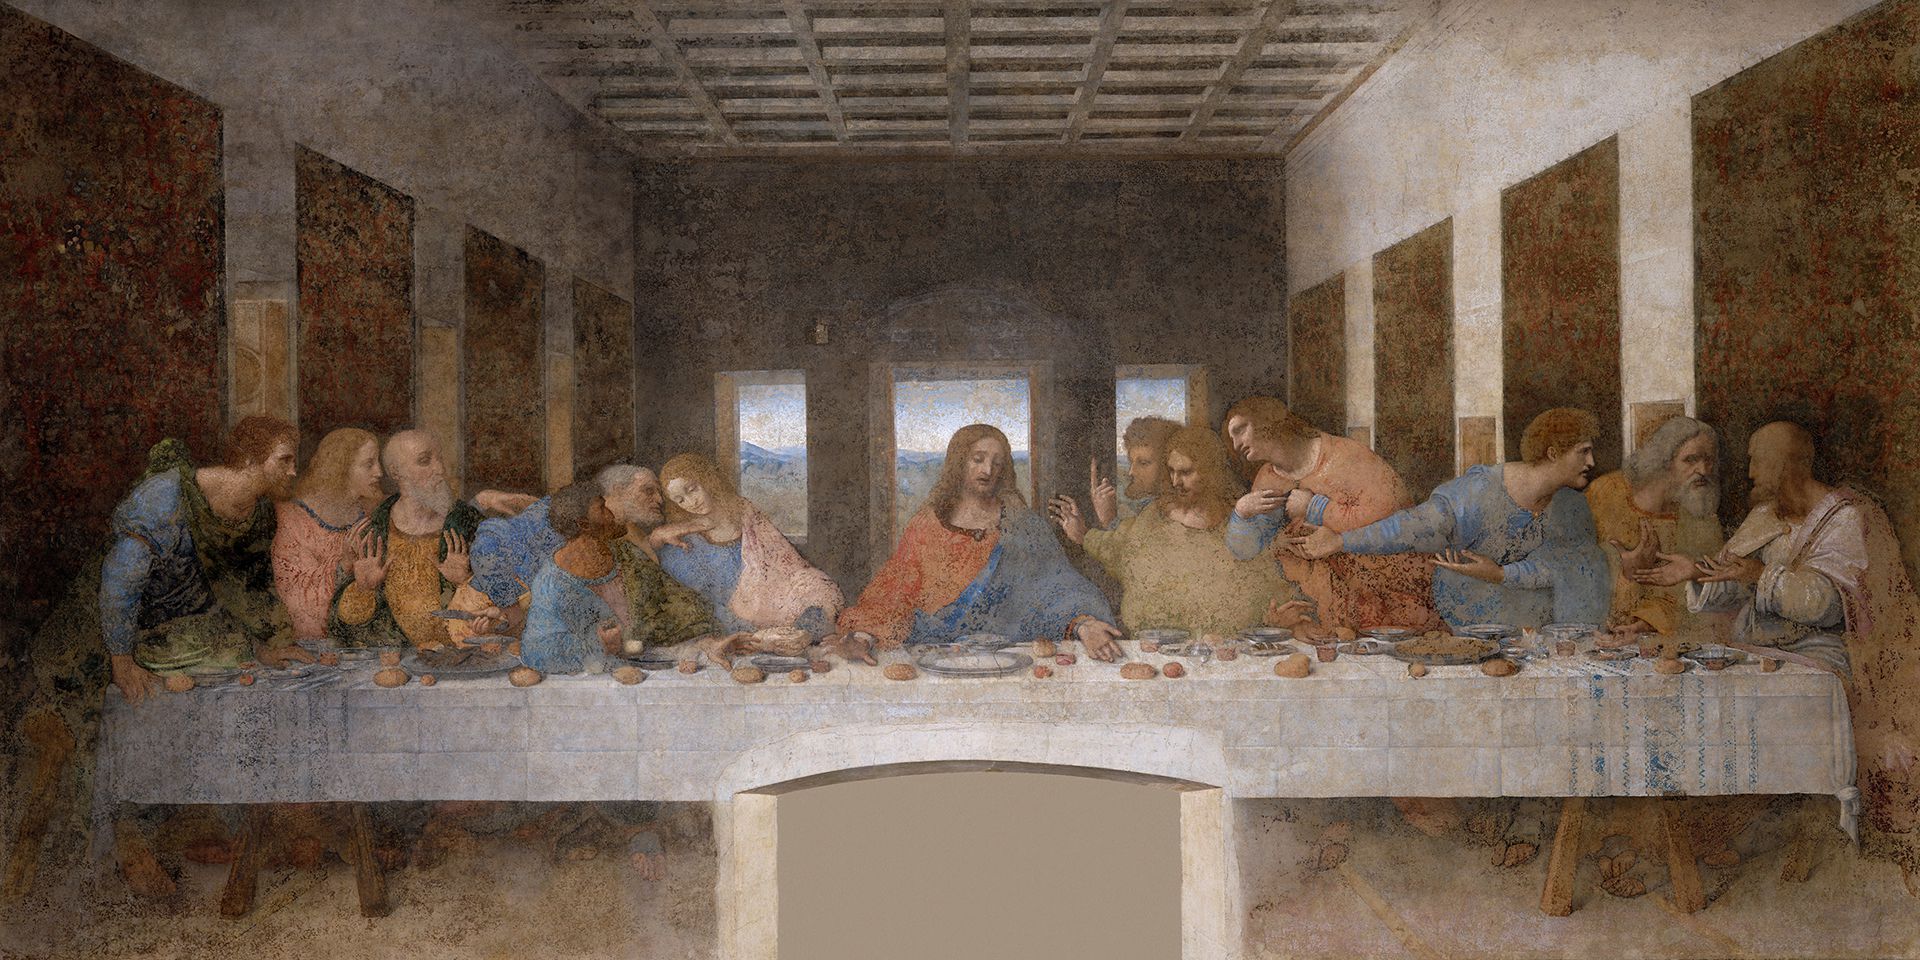 El mural de La Última Cena, obra de Leonardo da Vinci que se encuentra en Milán